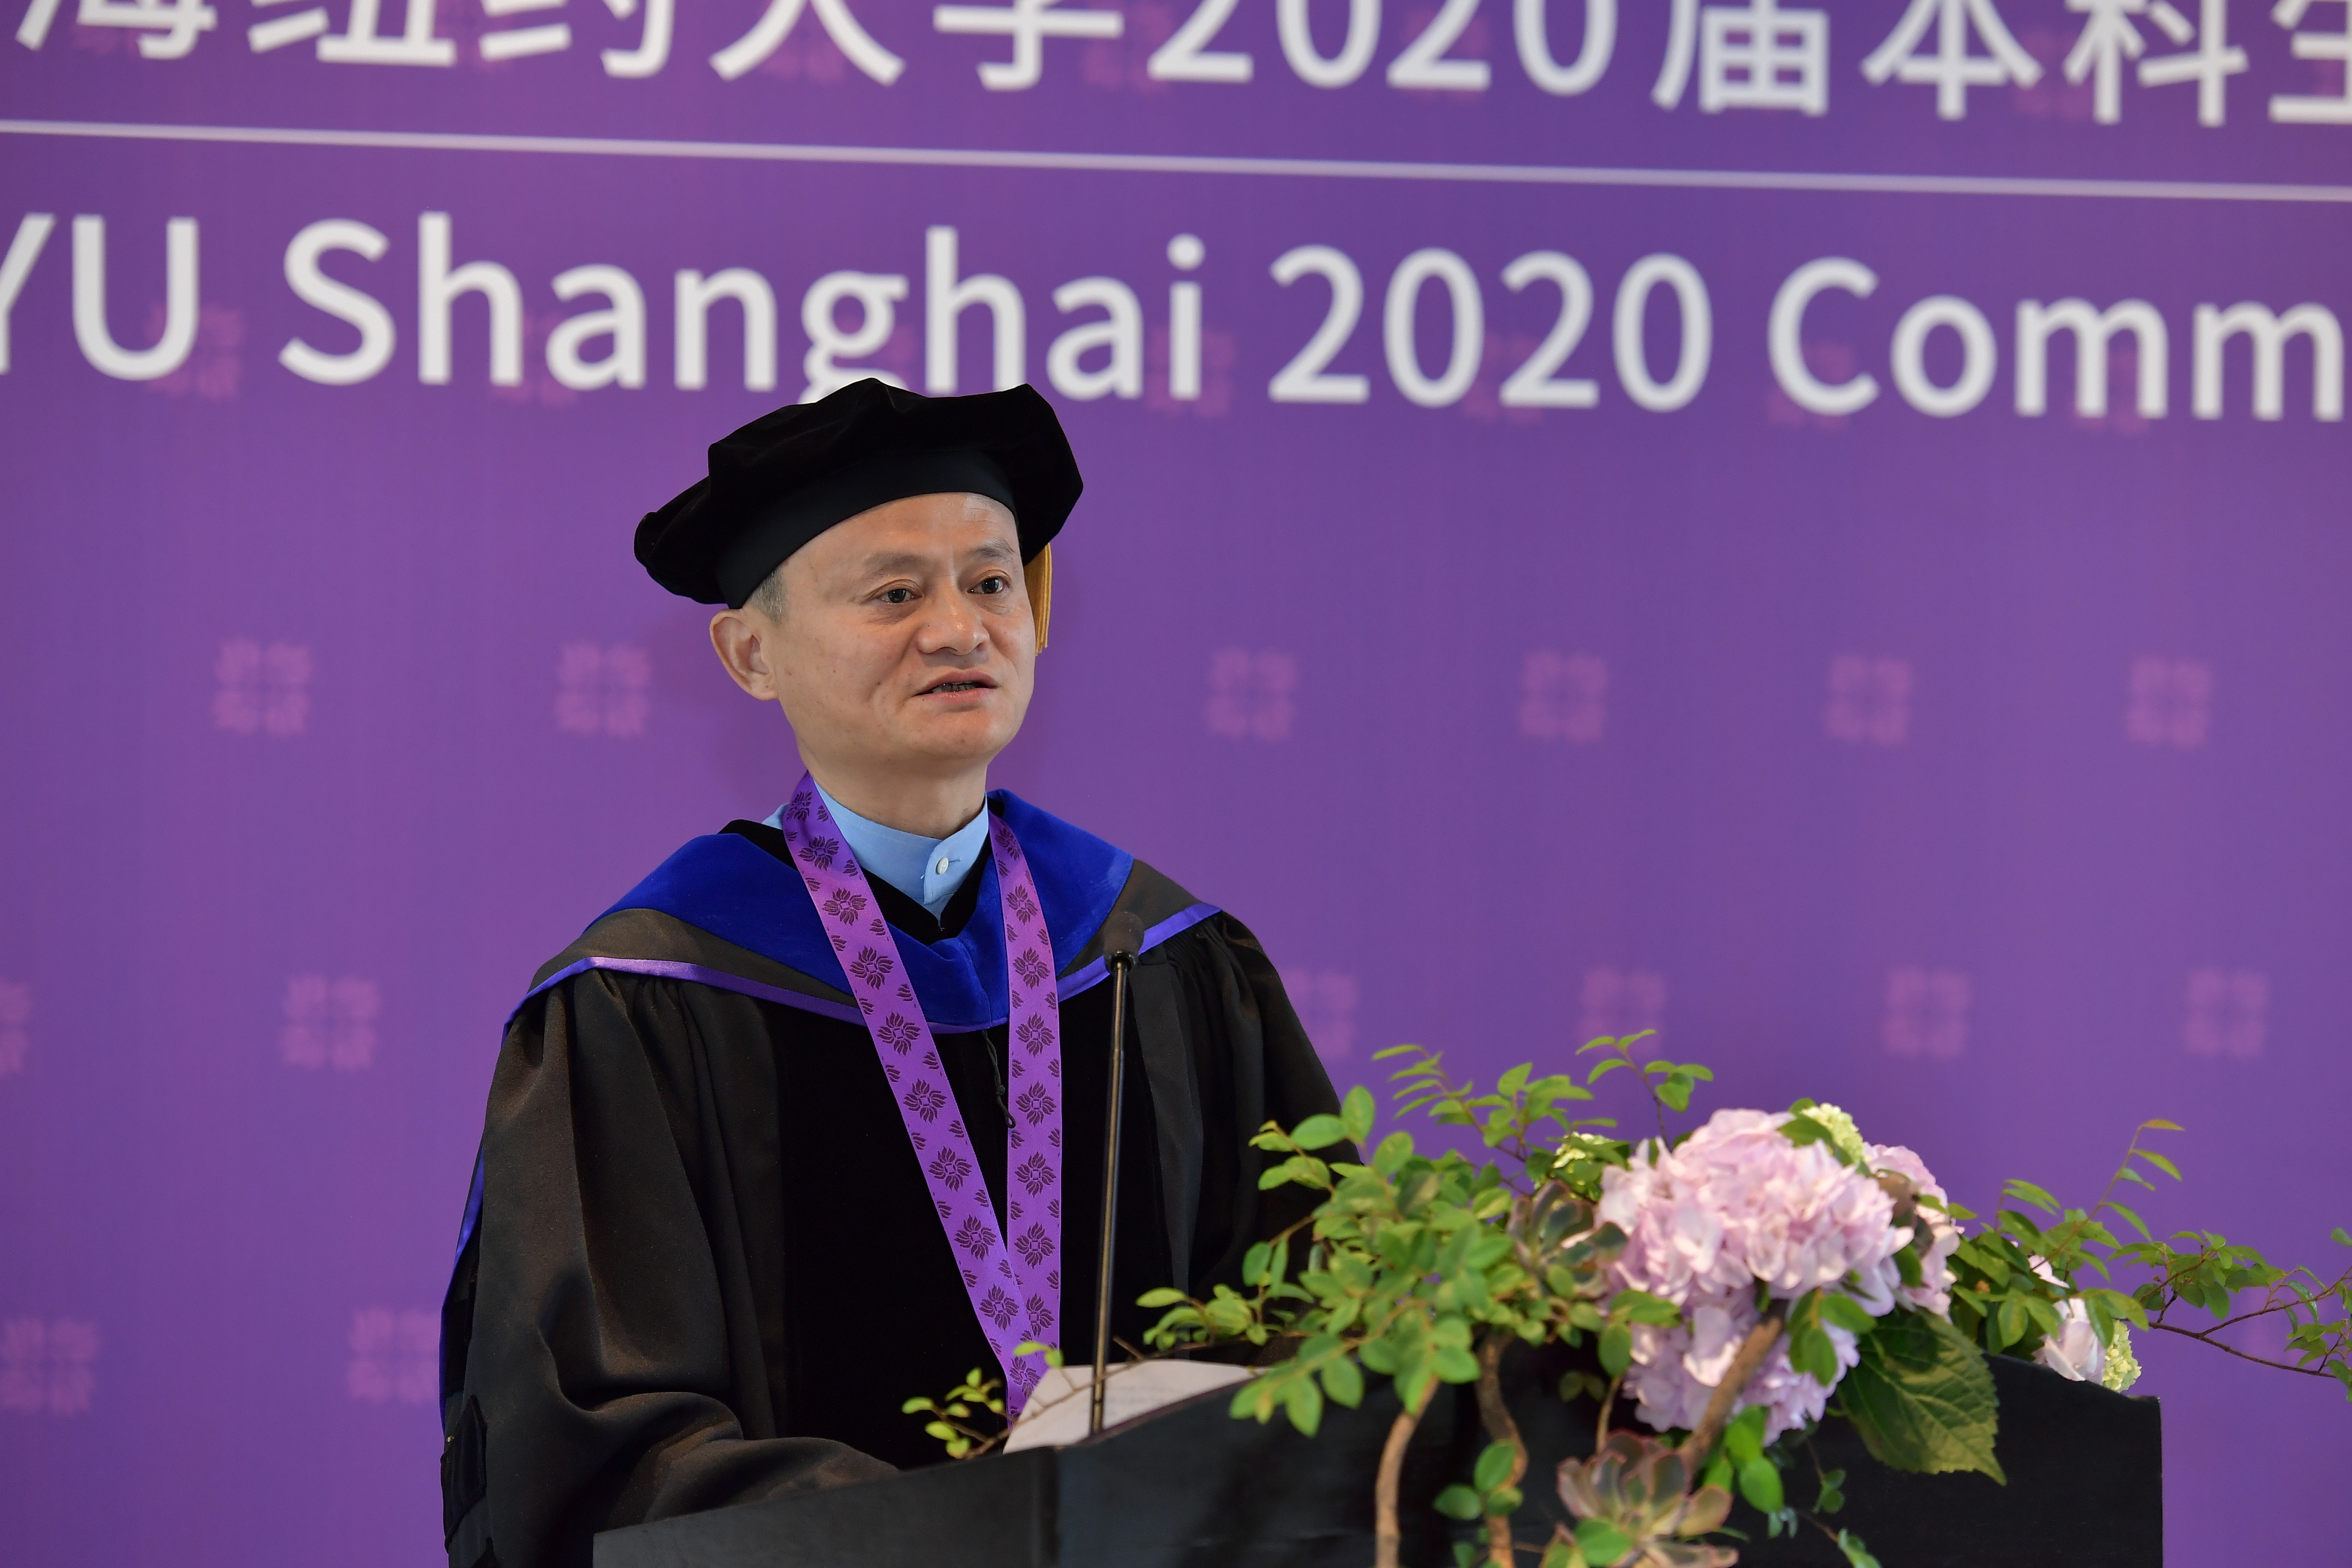 Jack Ma at Podium